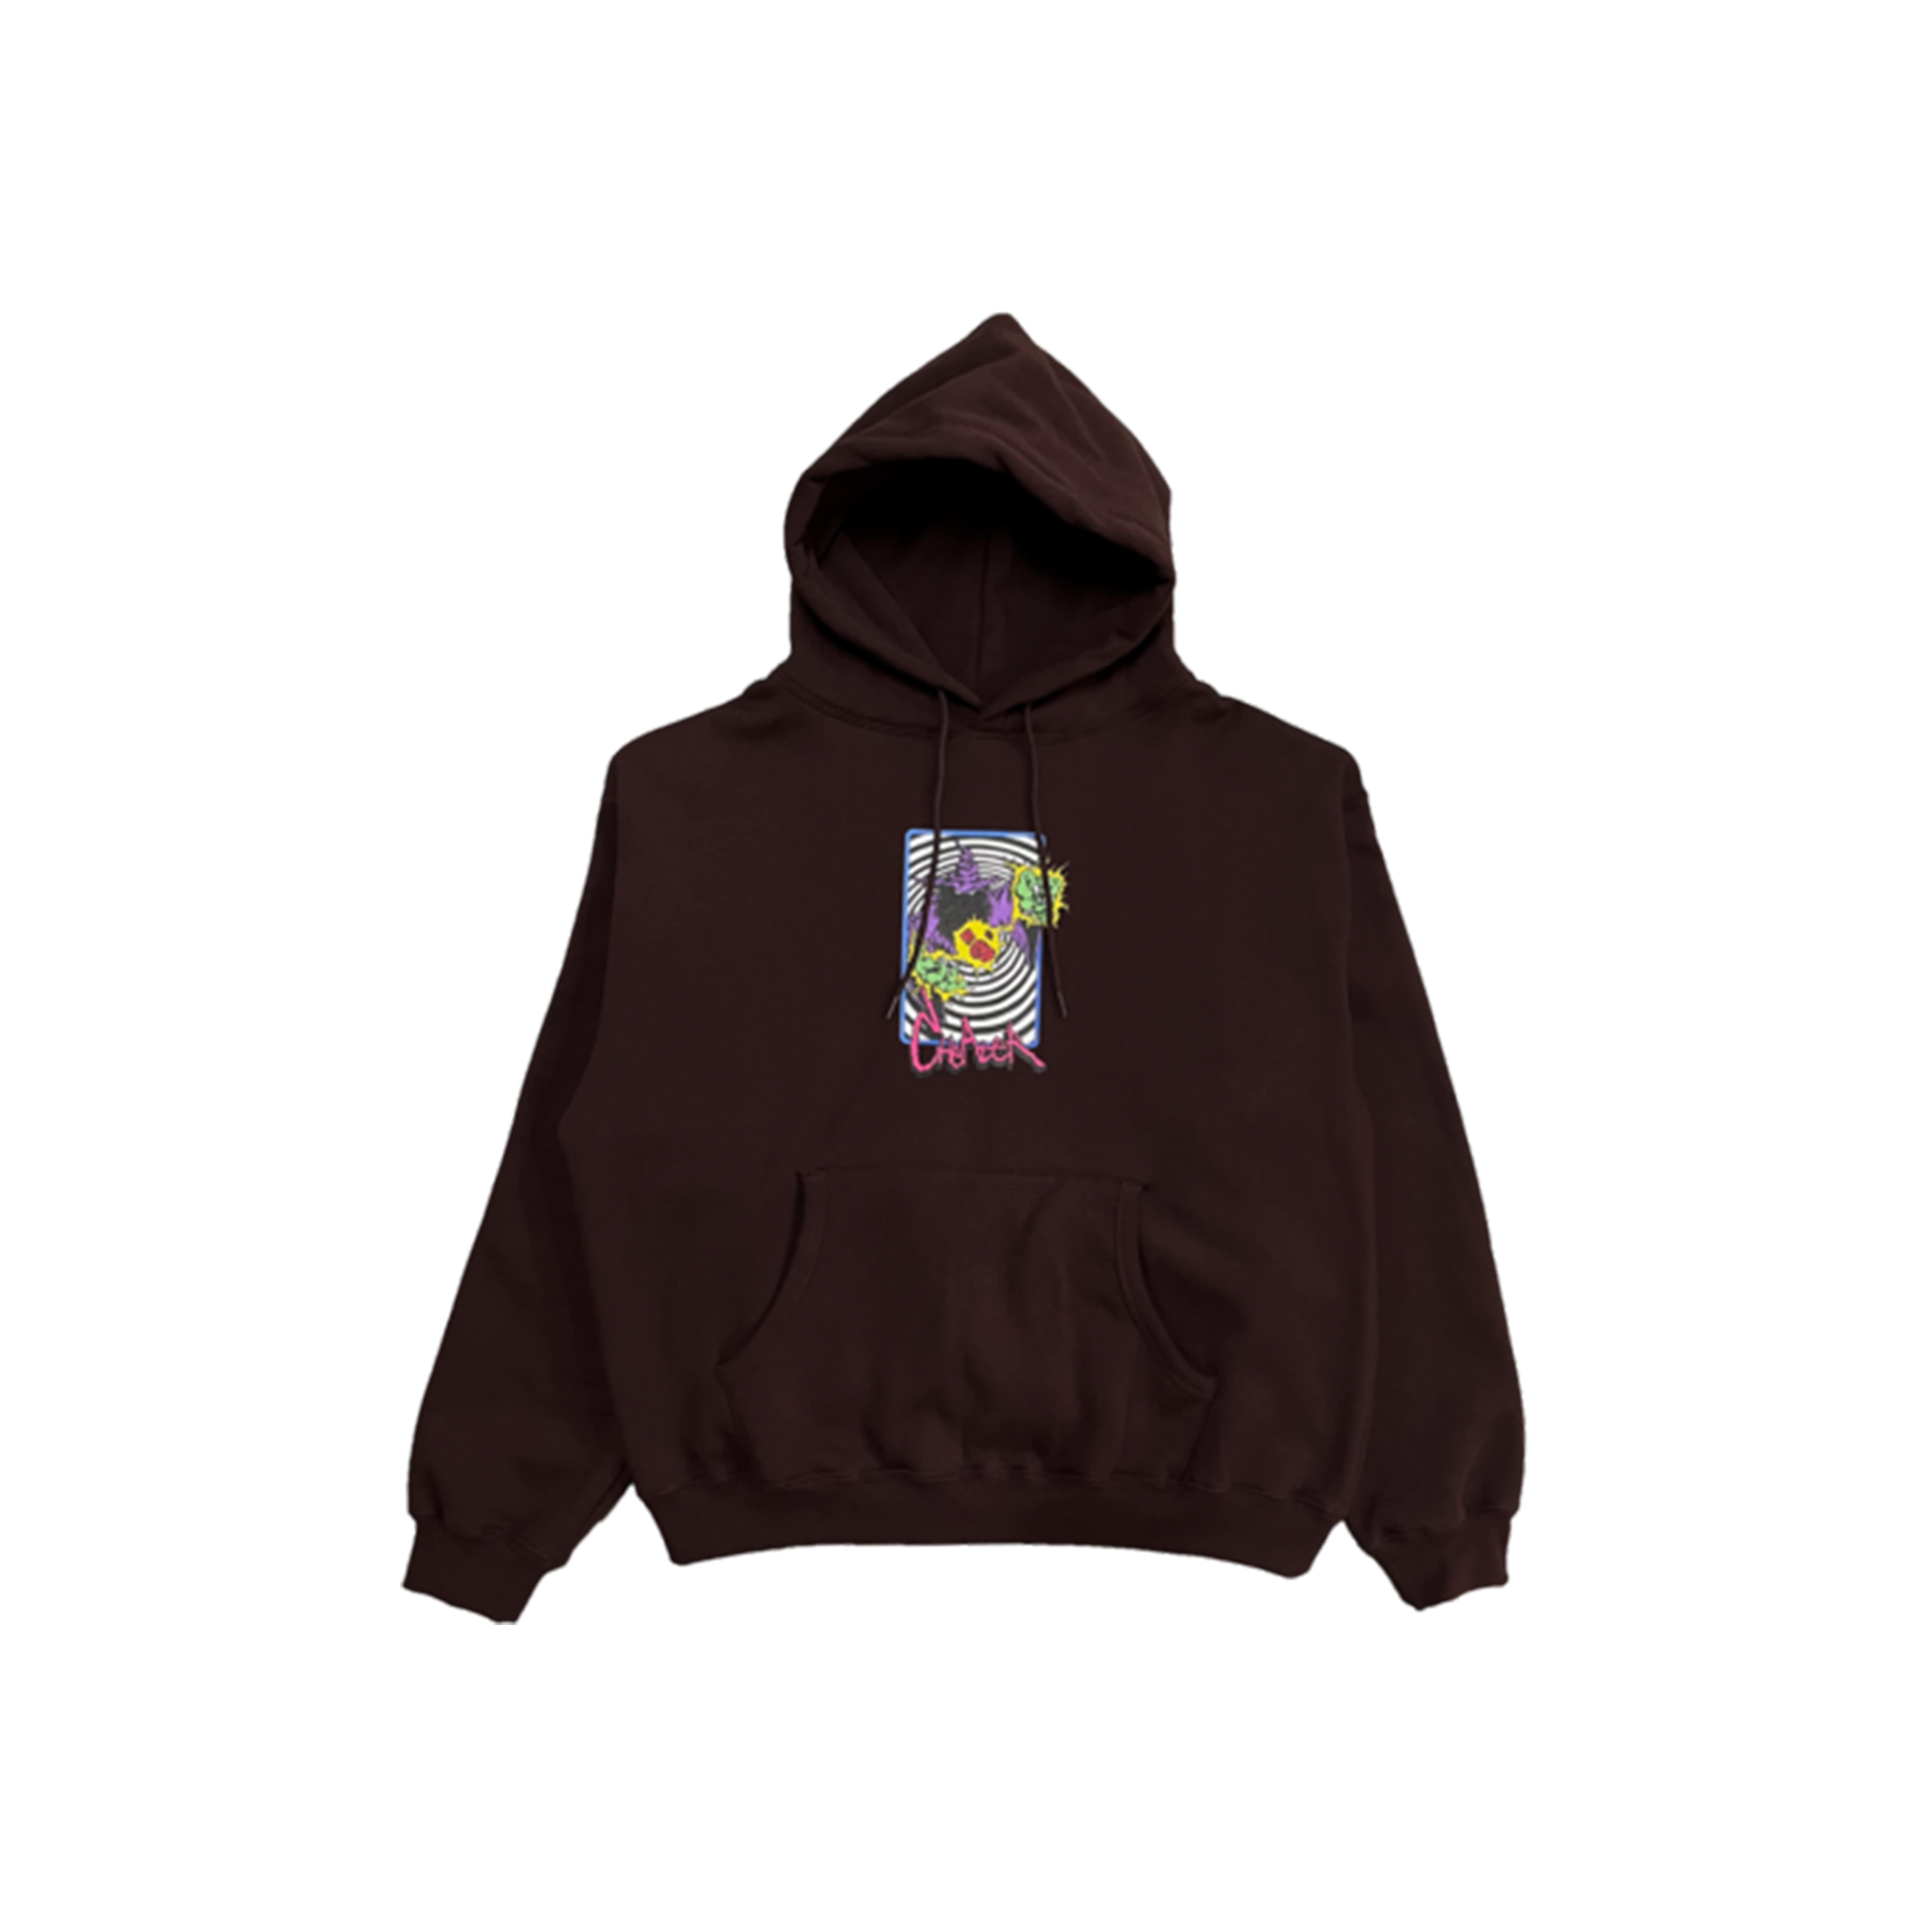 Cheater hoodie (Dark brown)